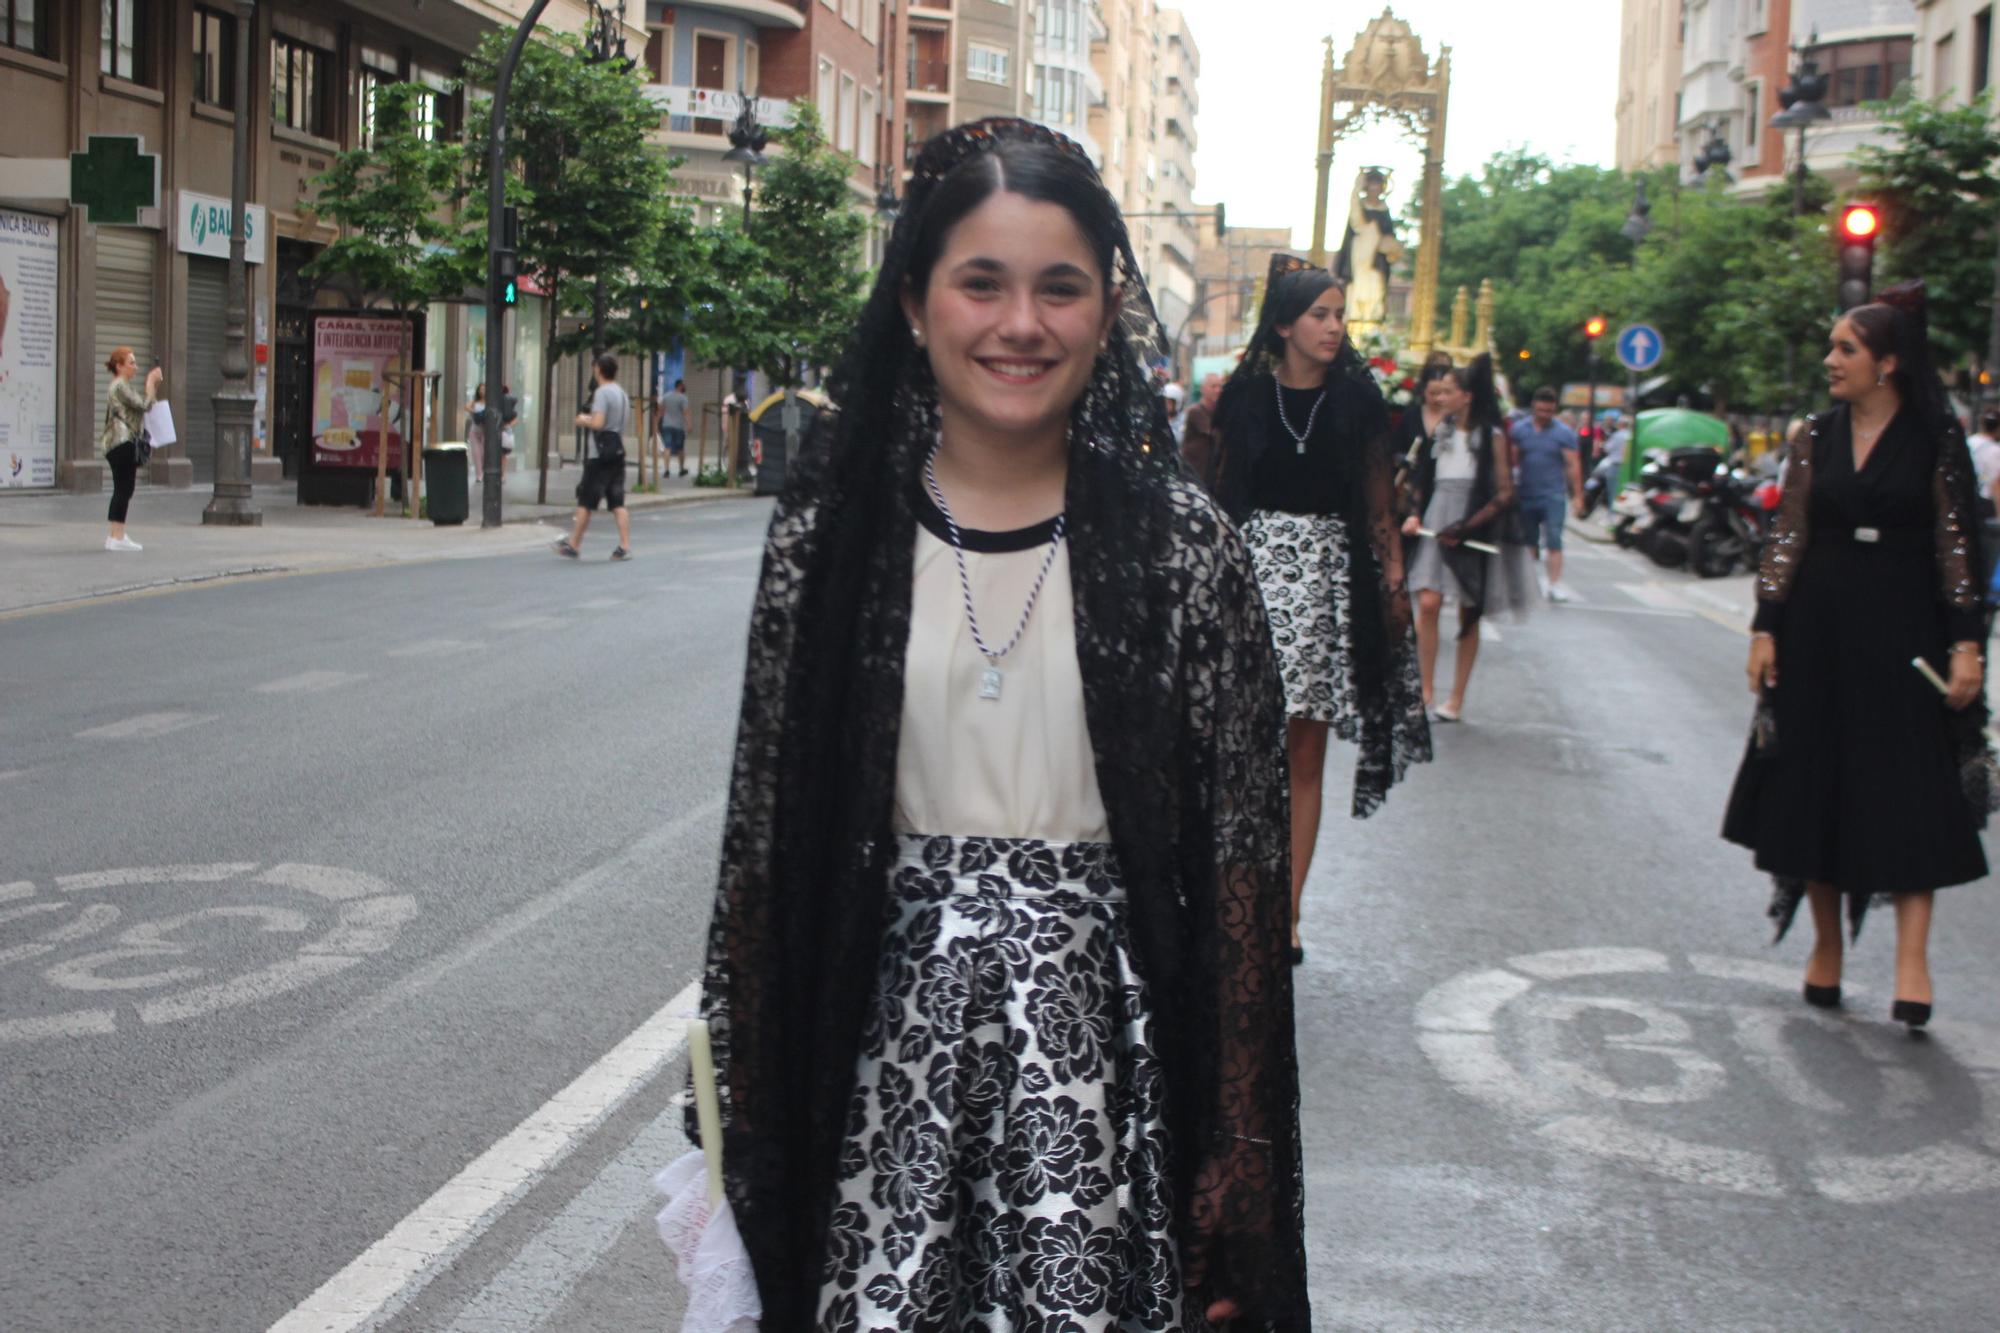 La calle San Vicente acoge la procesión "dels Xiquets" con tres generaciones falleras